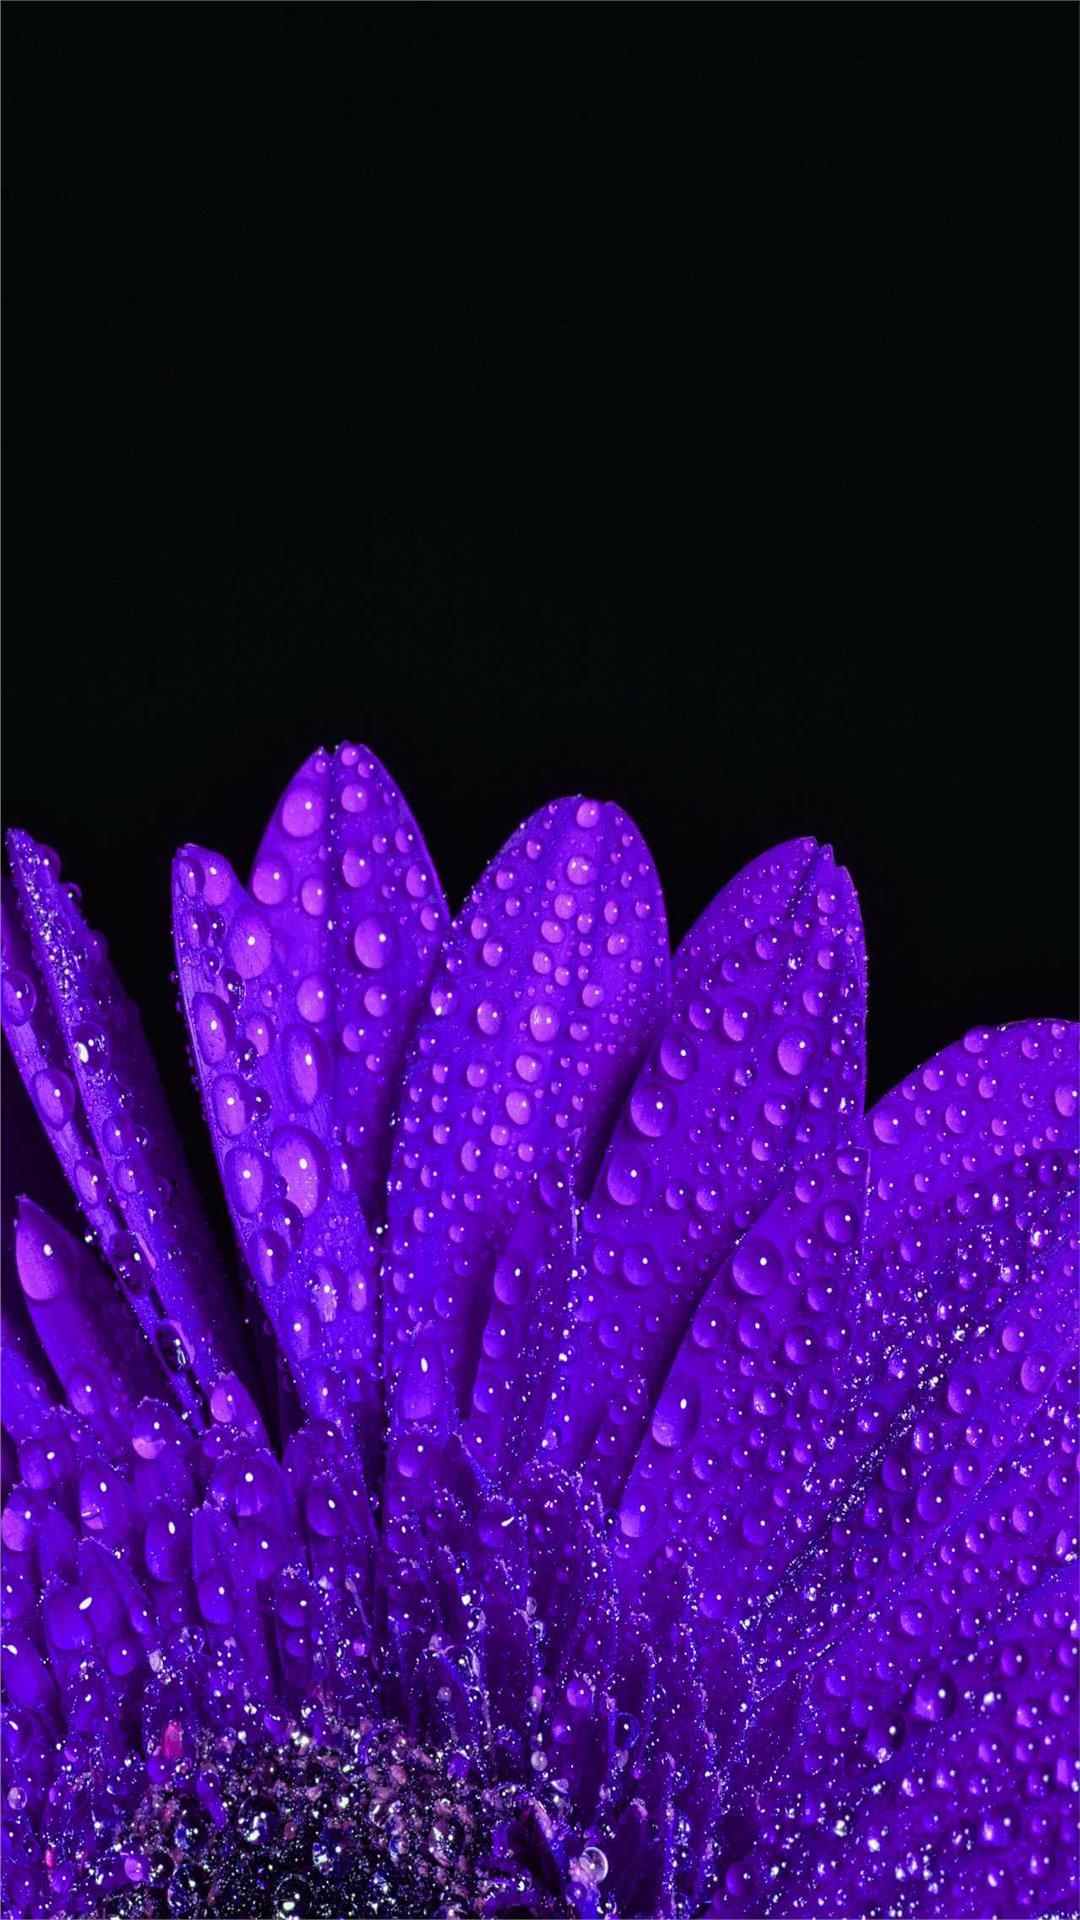 Aster Flower iPhone Wallpaper